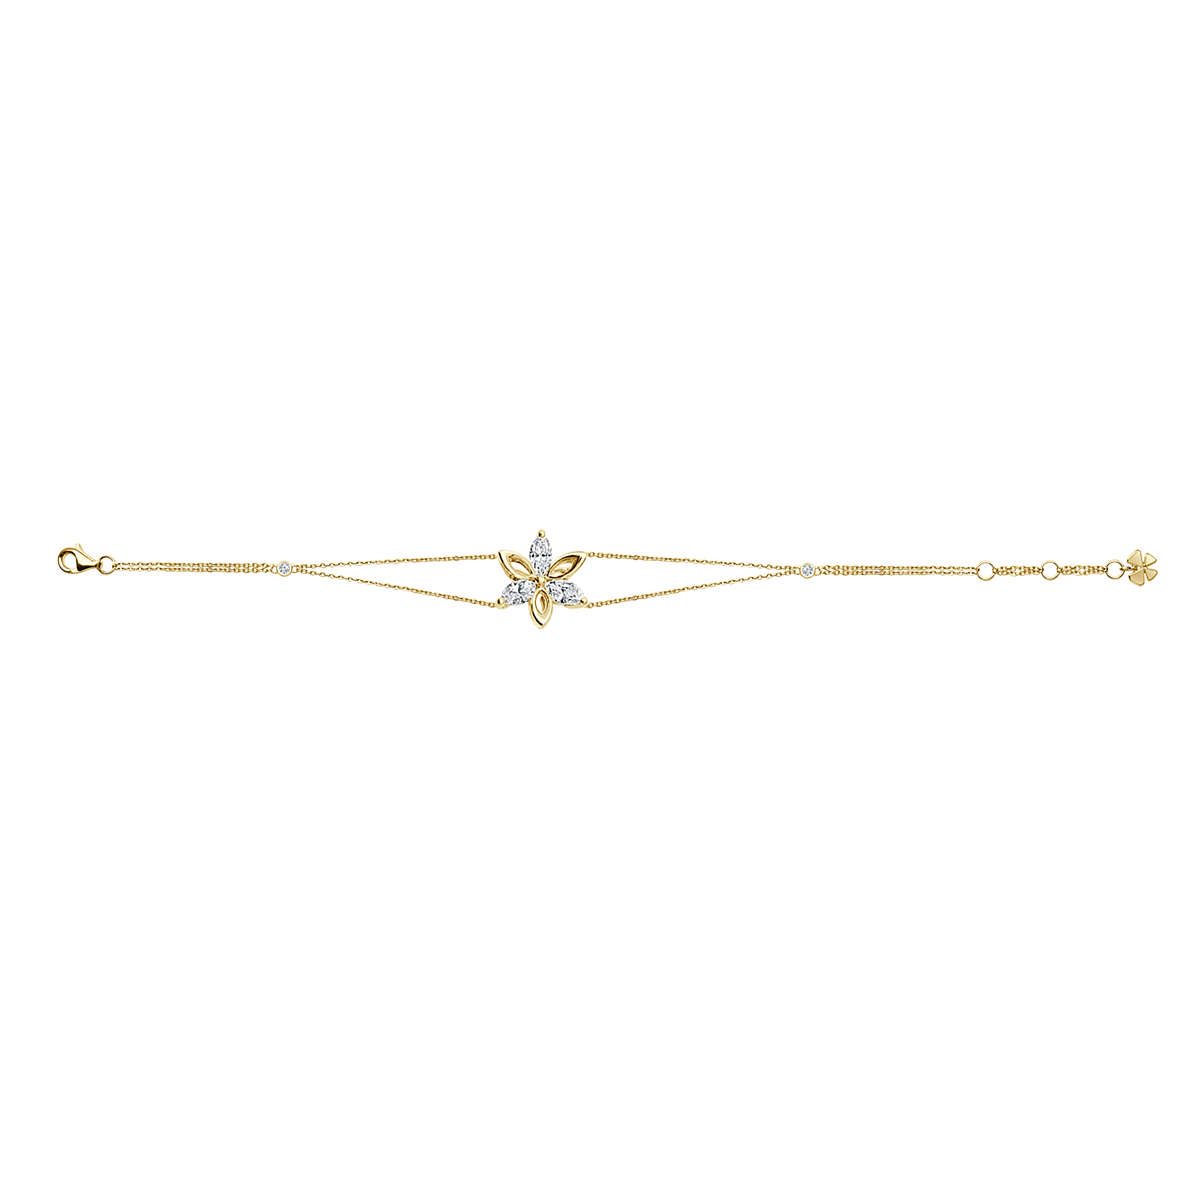 Alternate Diamond Flower Bracelet In 18 K Rose Gold From Ava Collection